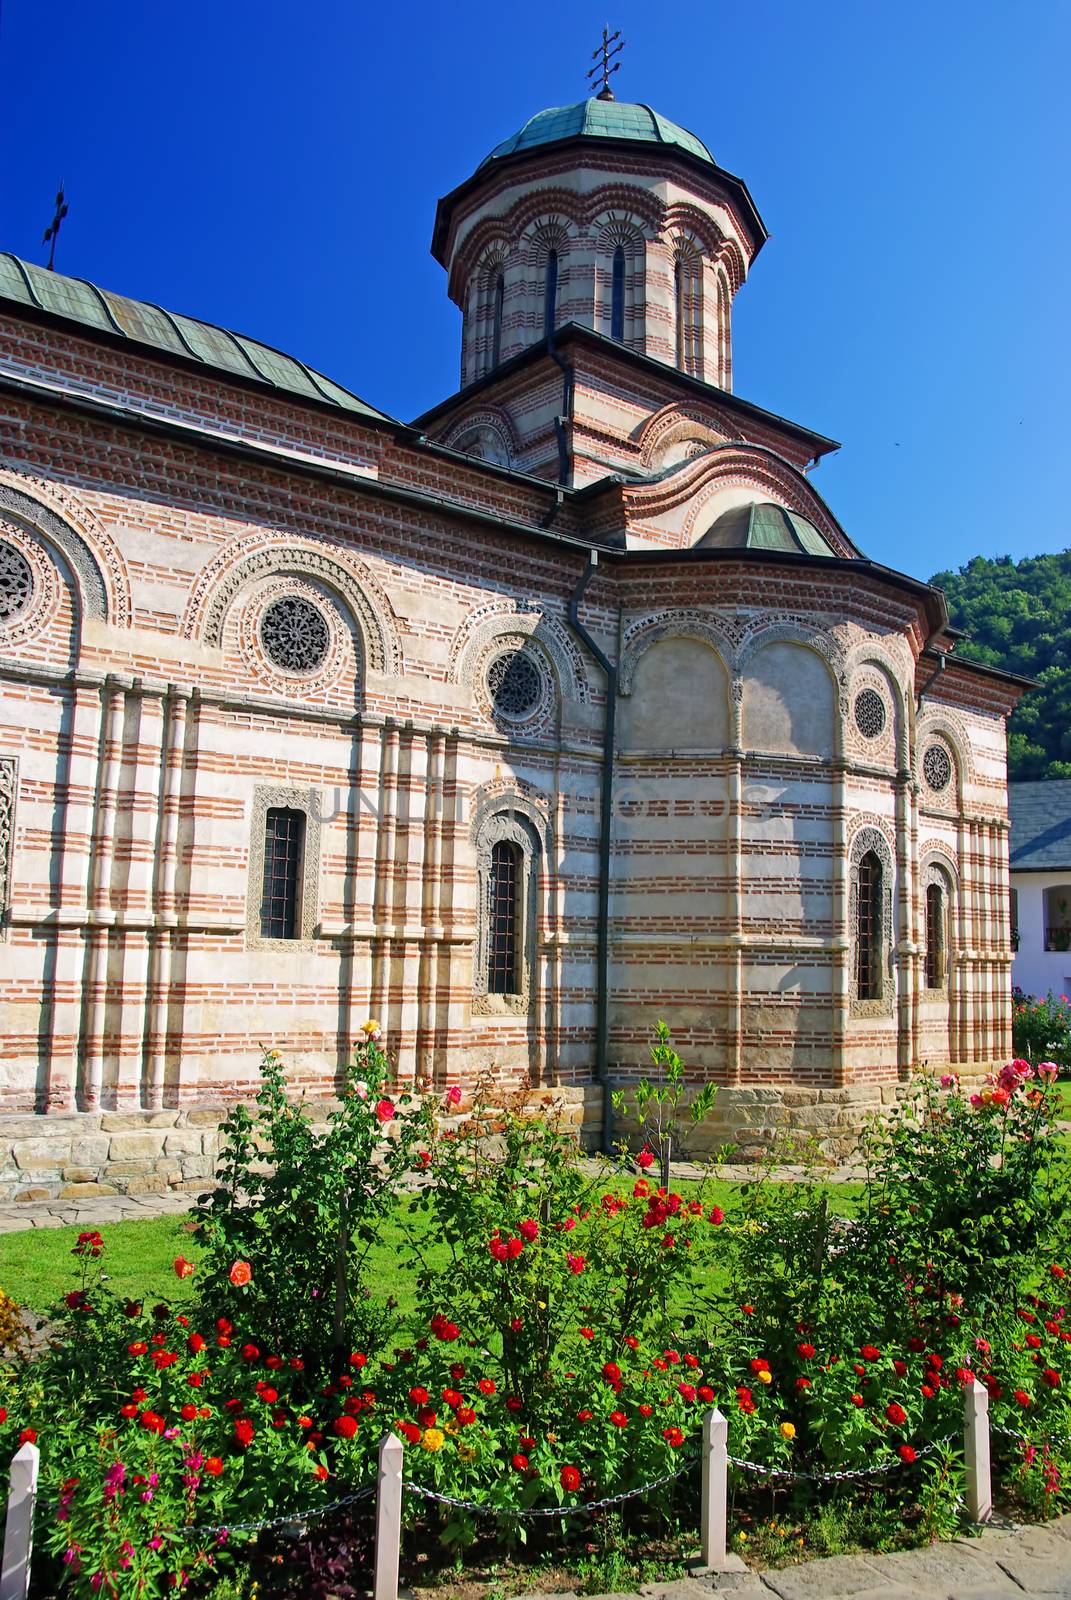 Cozia monastery church by savcoco